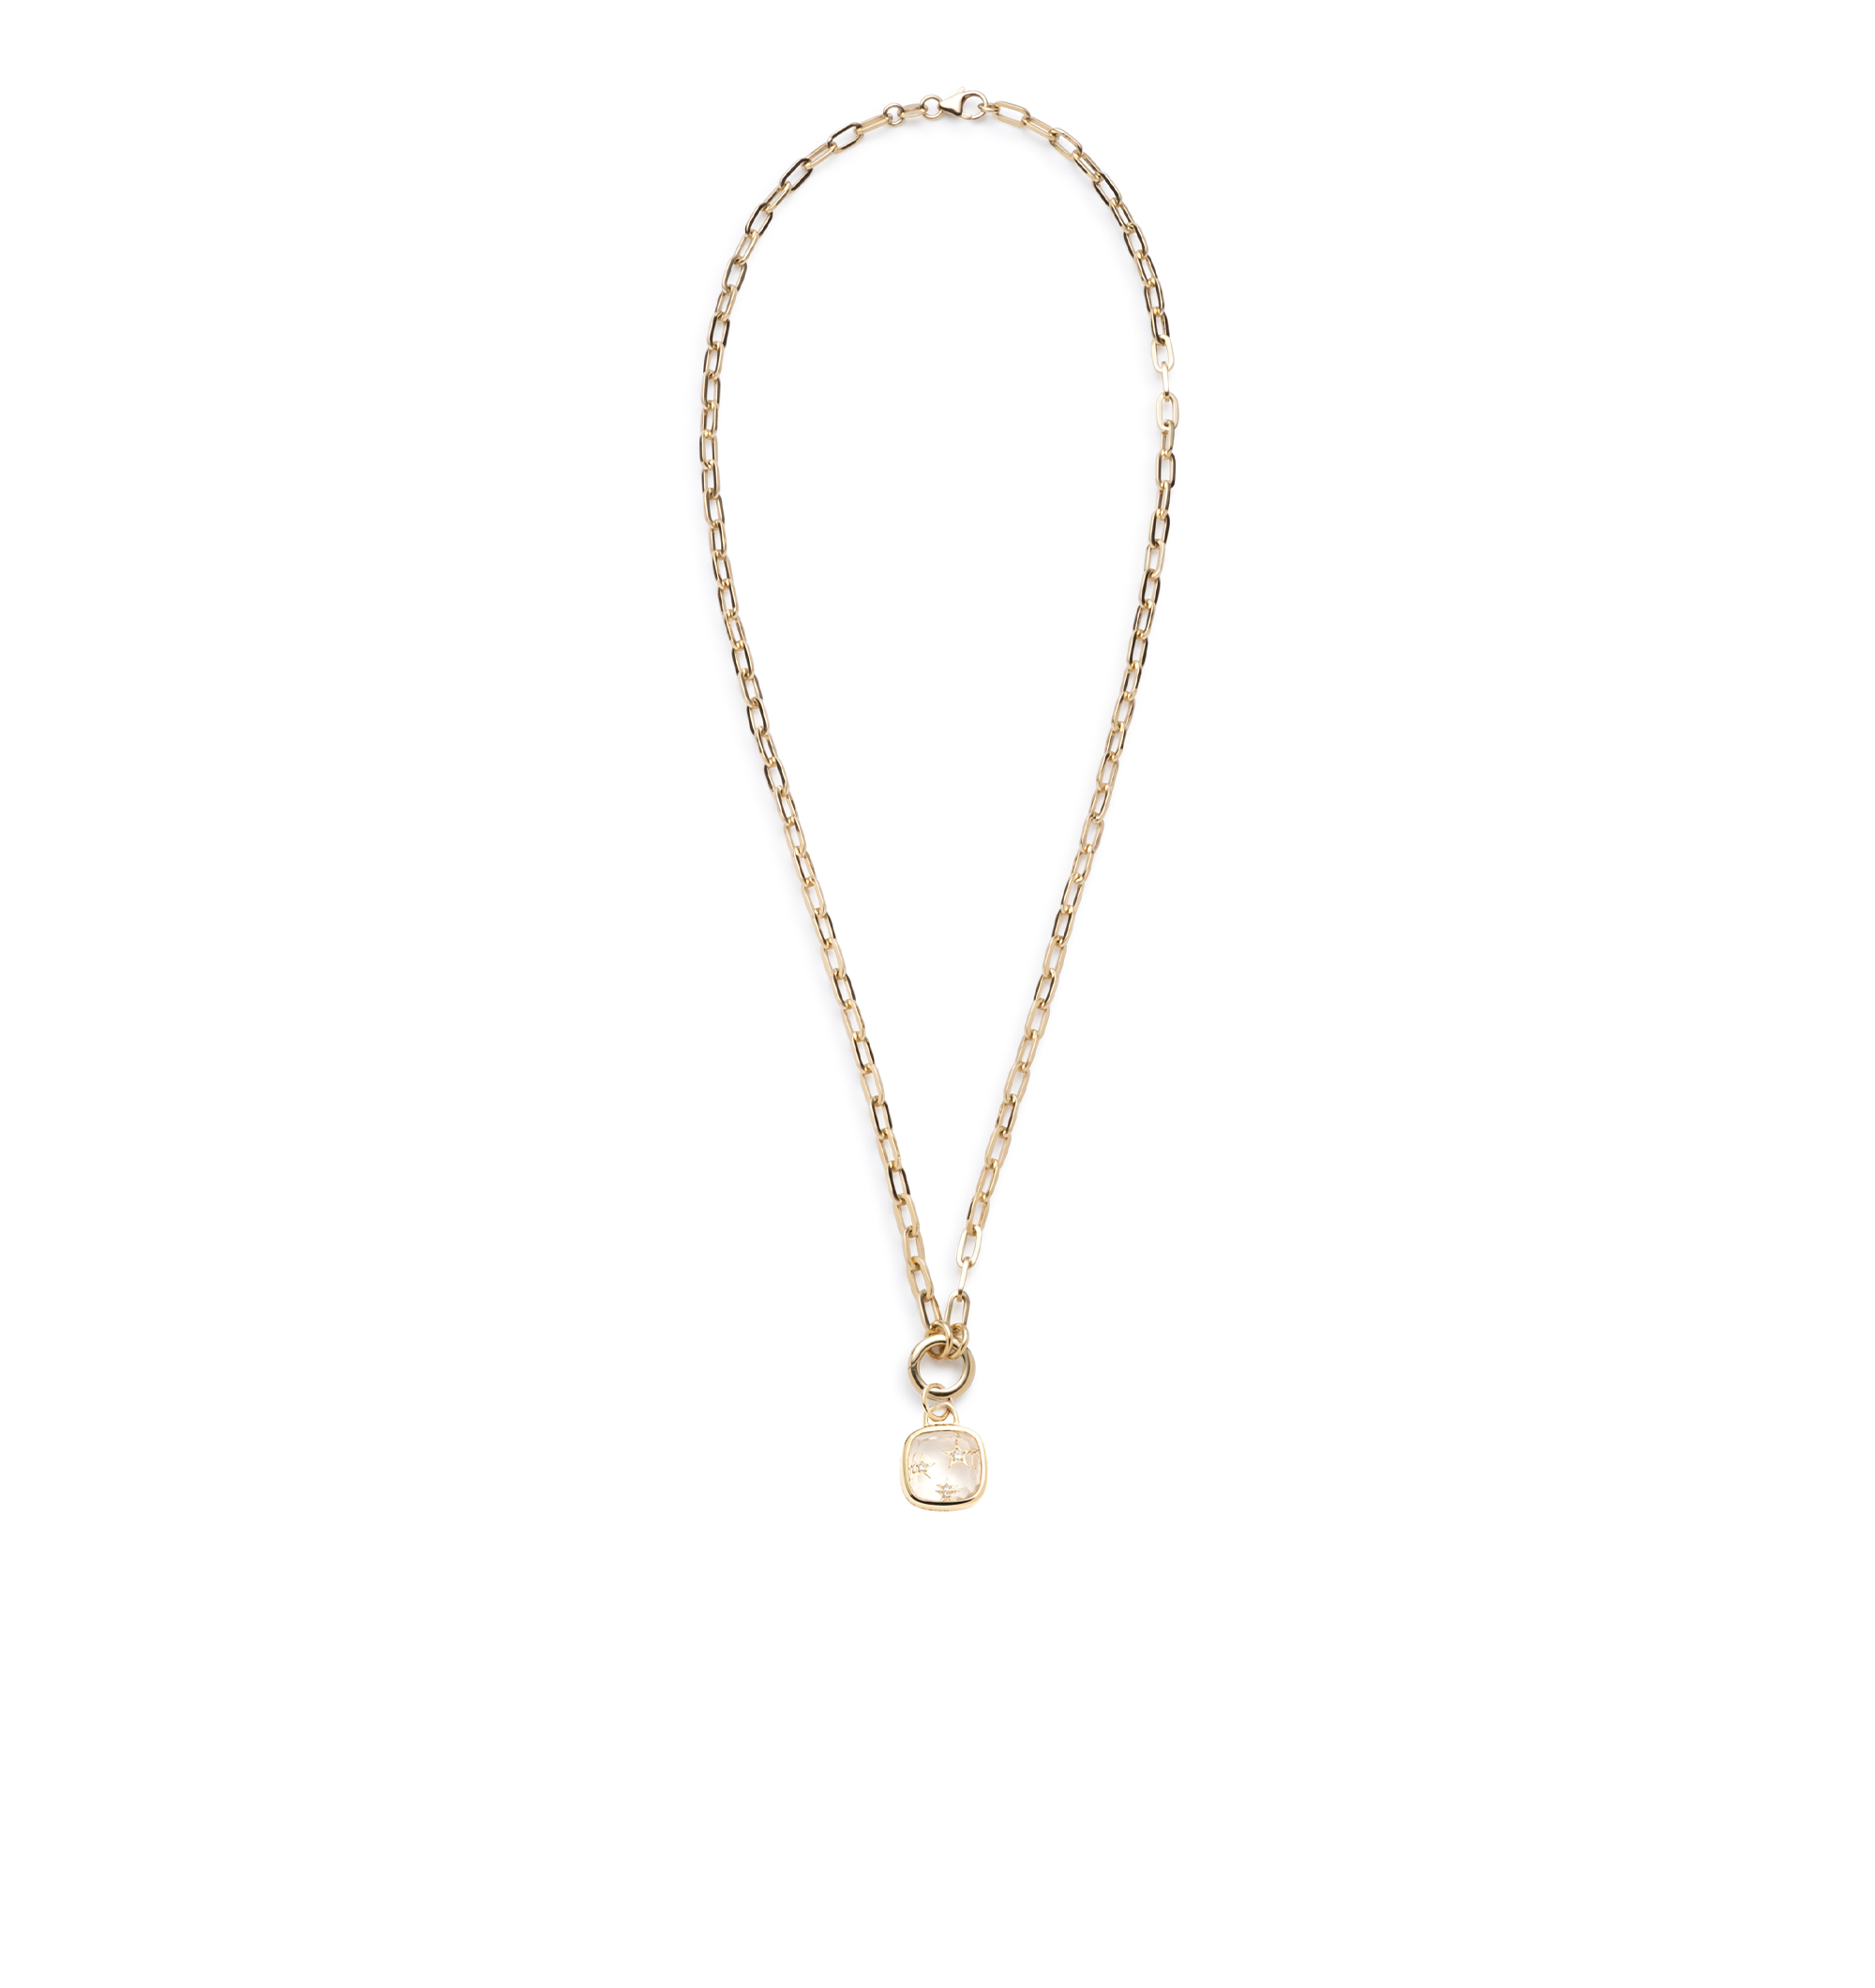 Per Aspera Ad Astra - Dream : Refined Open Clip Chain Necklace